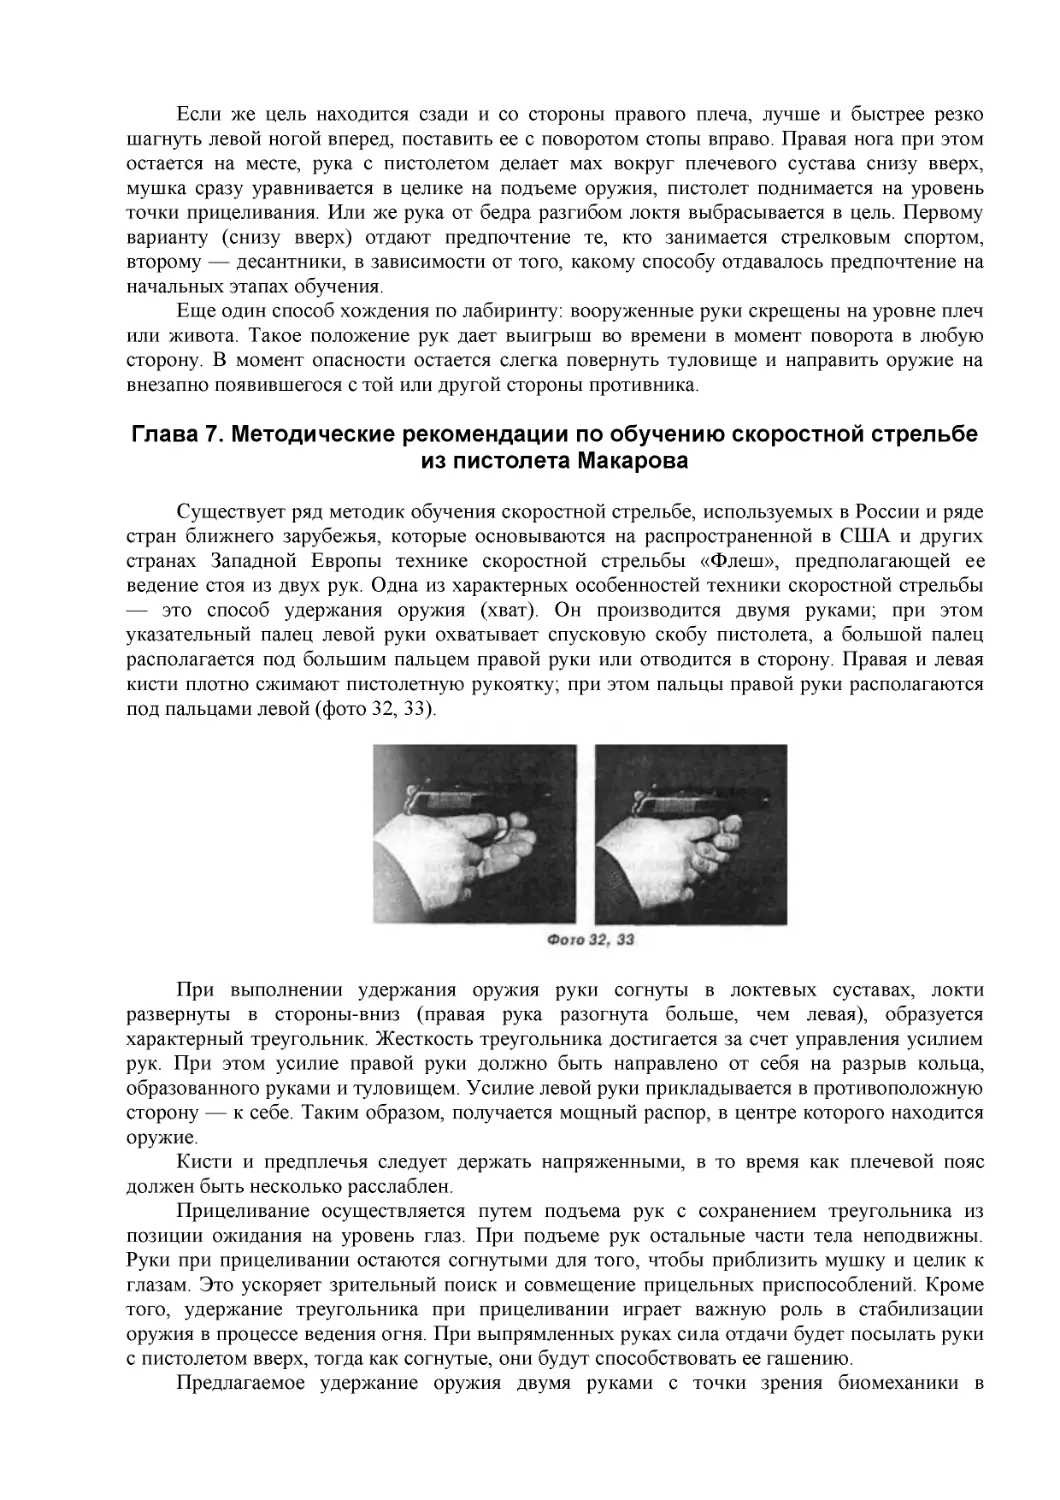 ﻿Глава 7. Методические рекомендации по обучению скоростной стрельбе из пистолета Макаров